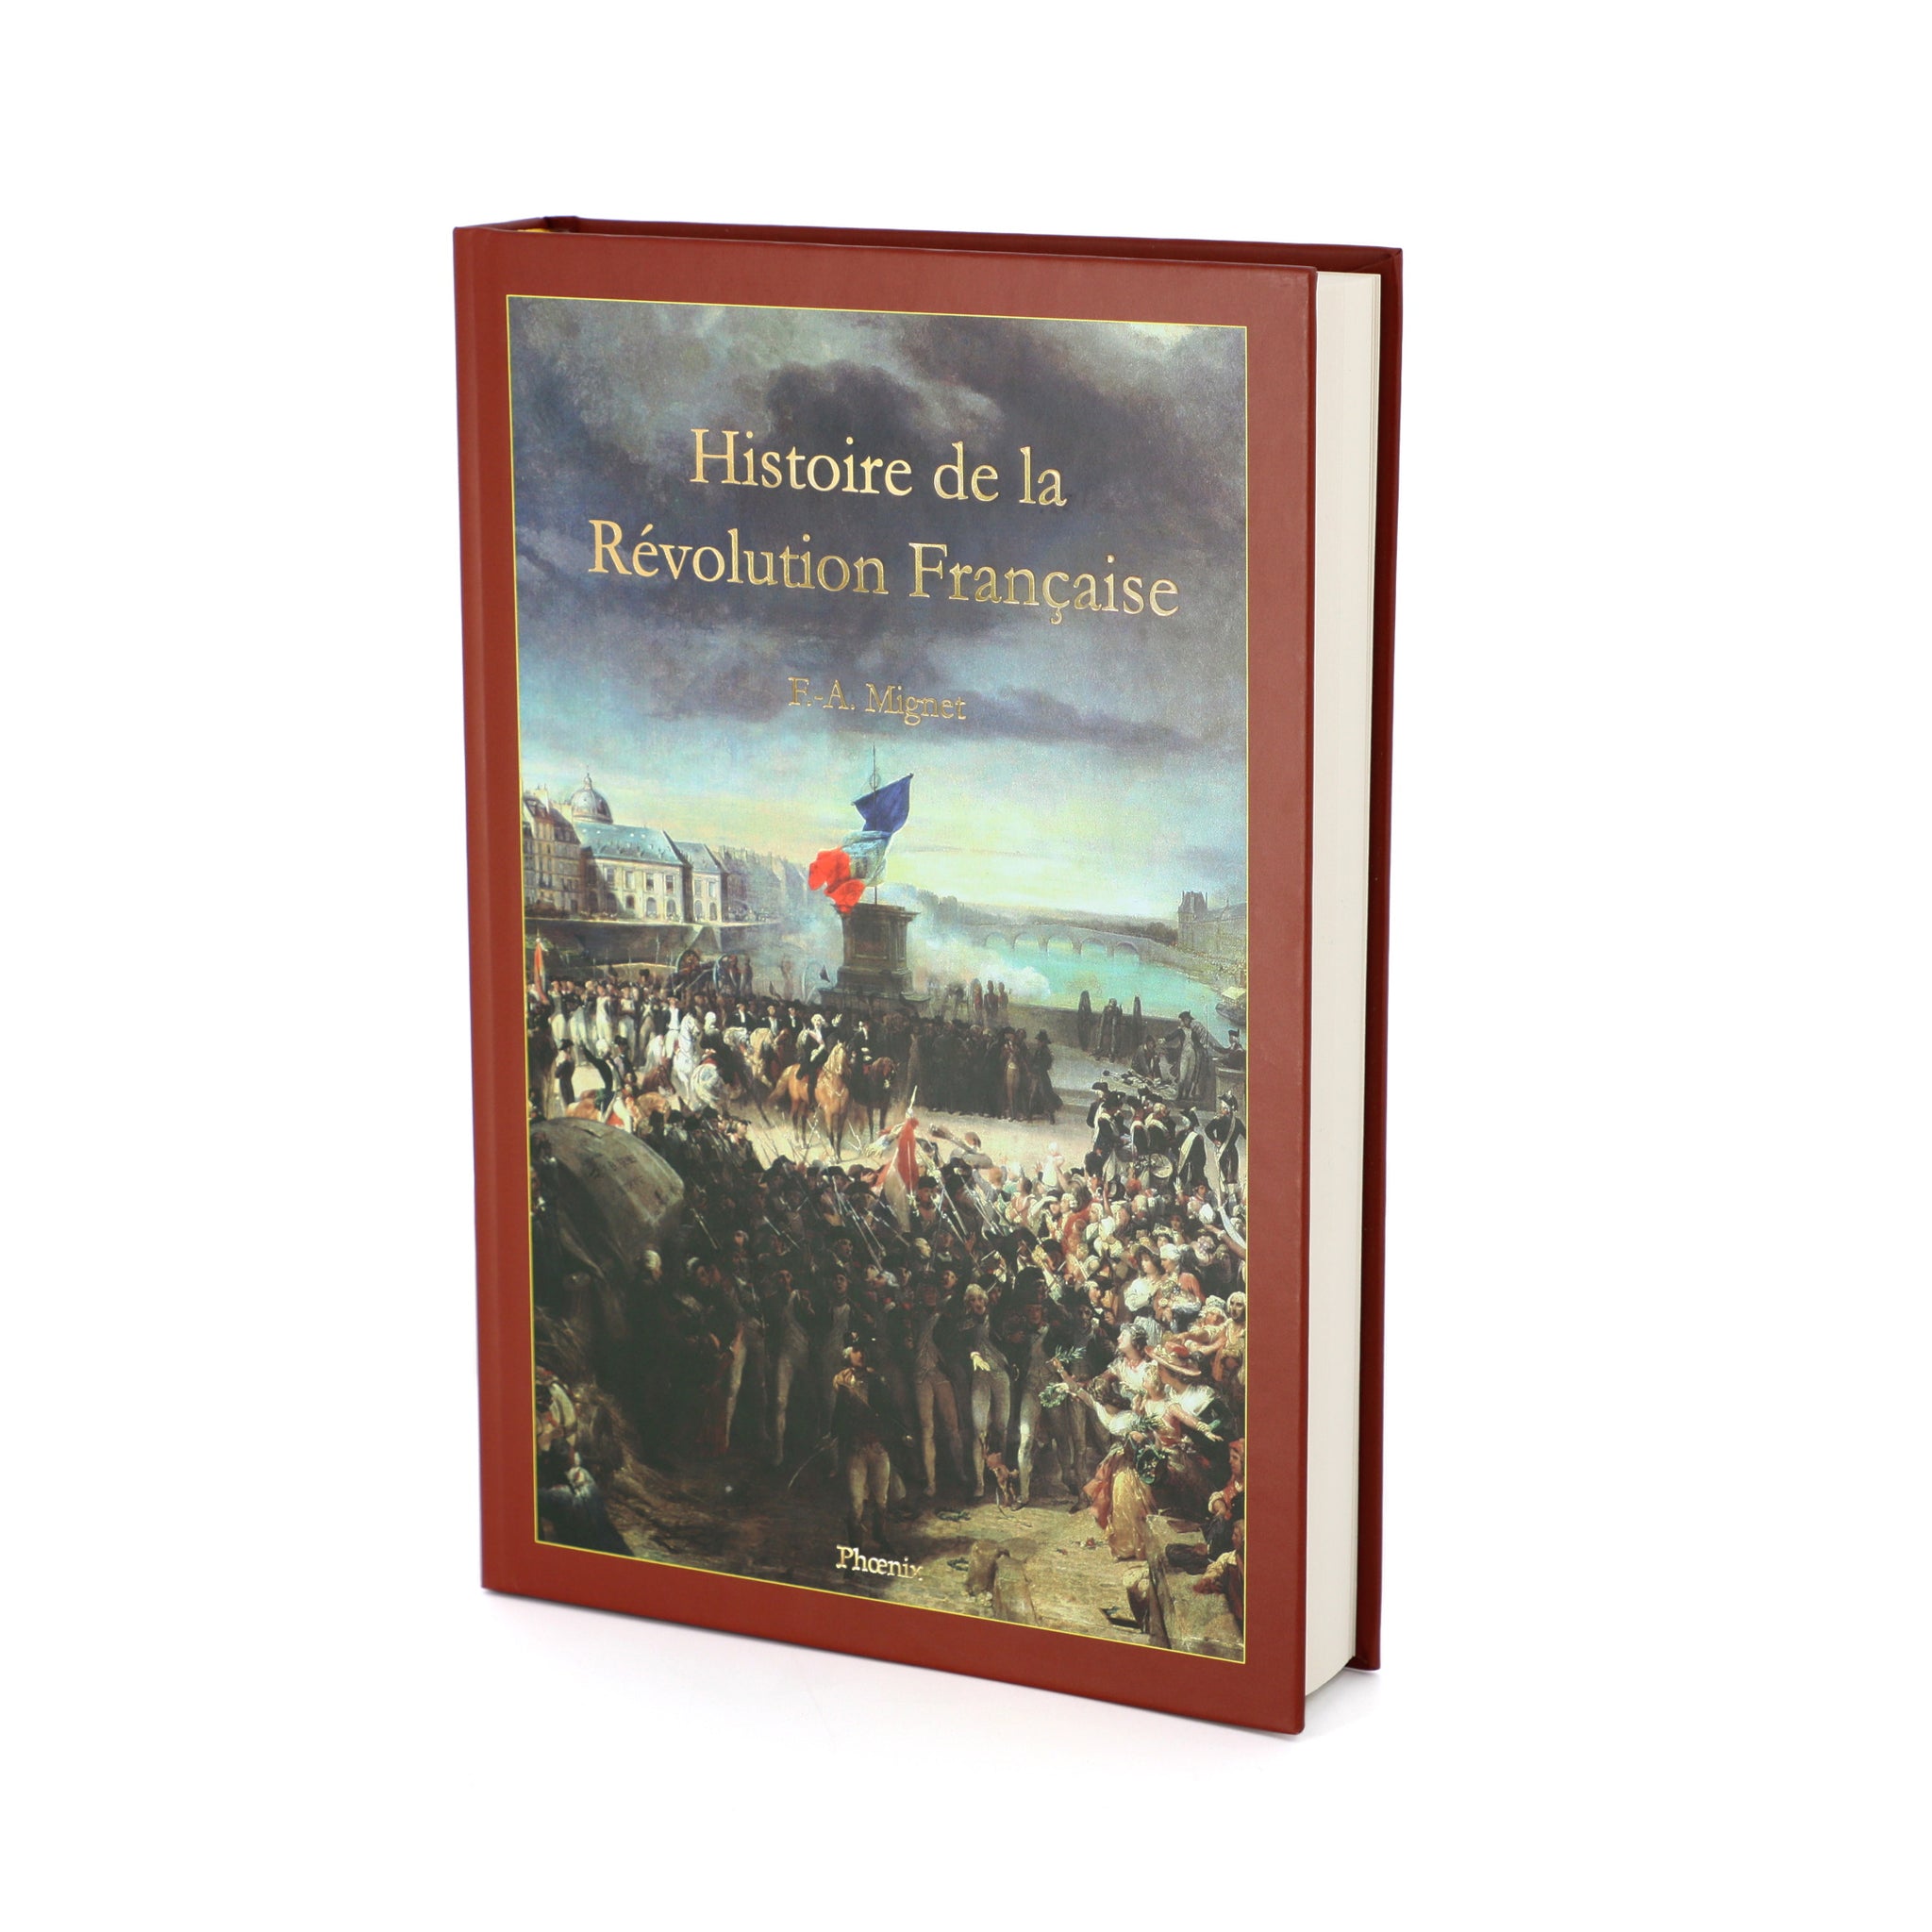 Histoire de la Révolution Française - François-Auguste Mignet